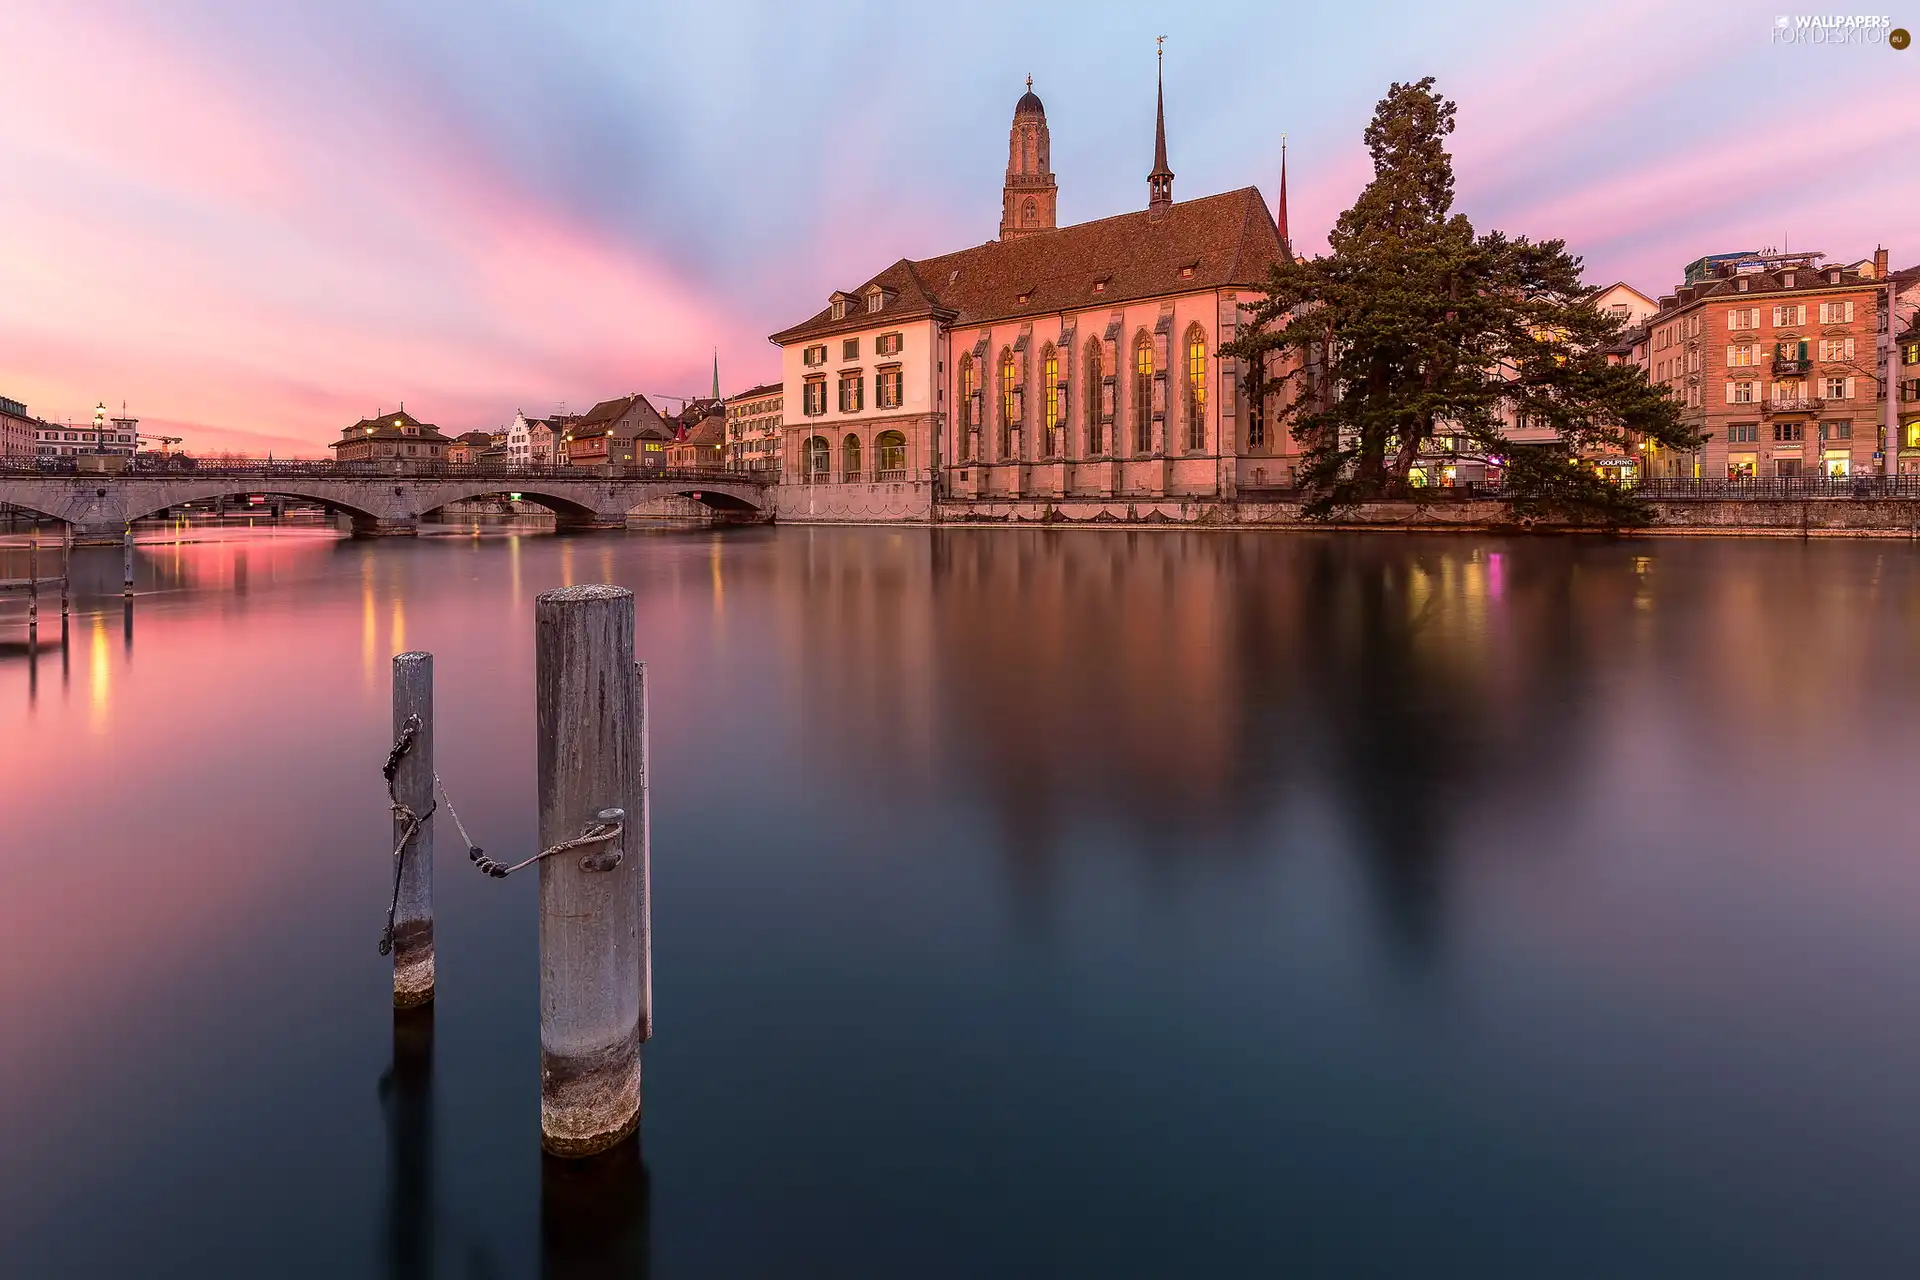 Zurich, Switzerland, Grossmunster Church, bridge, River Limmat